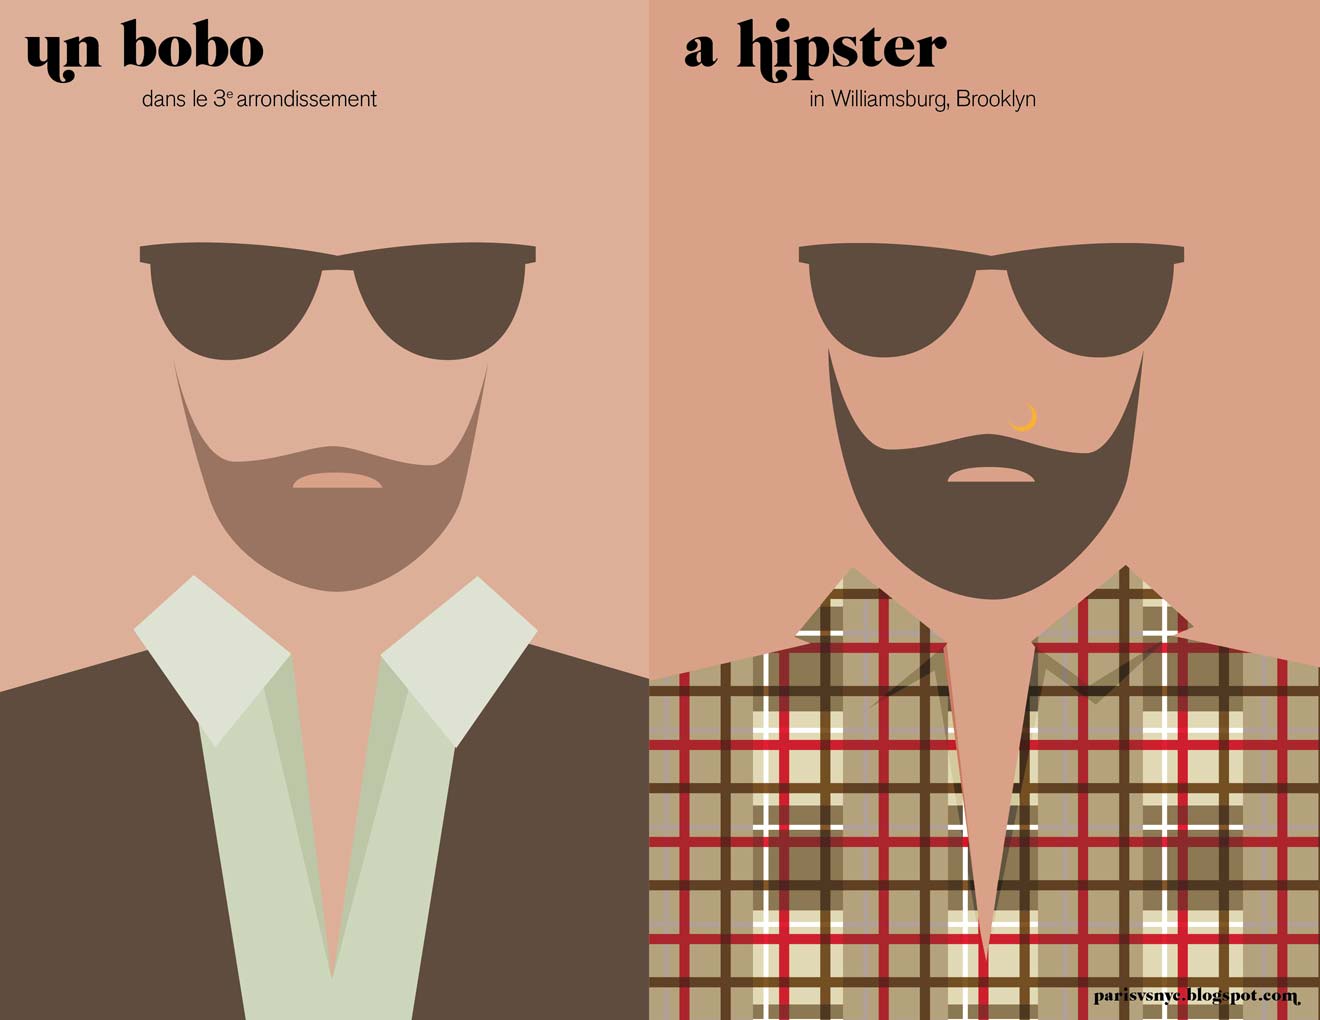 A hipster / Un Bobo